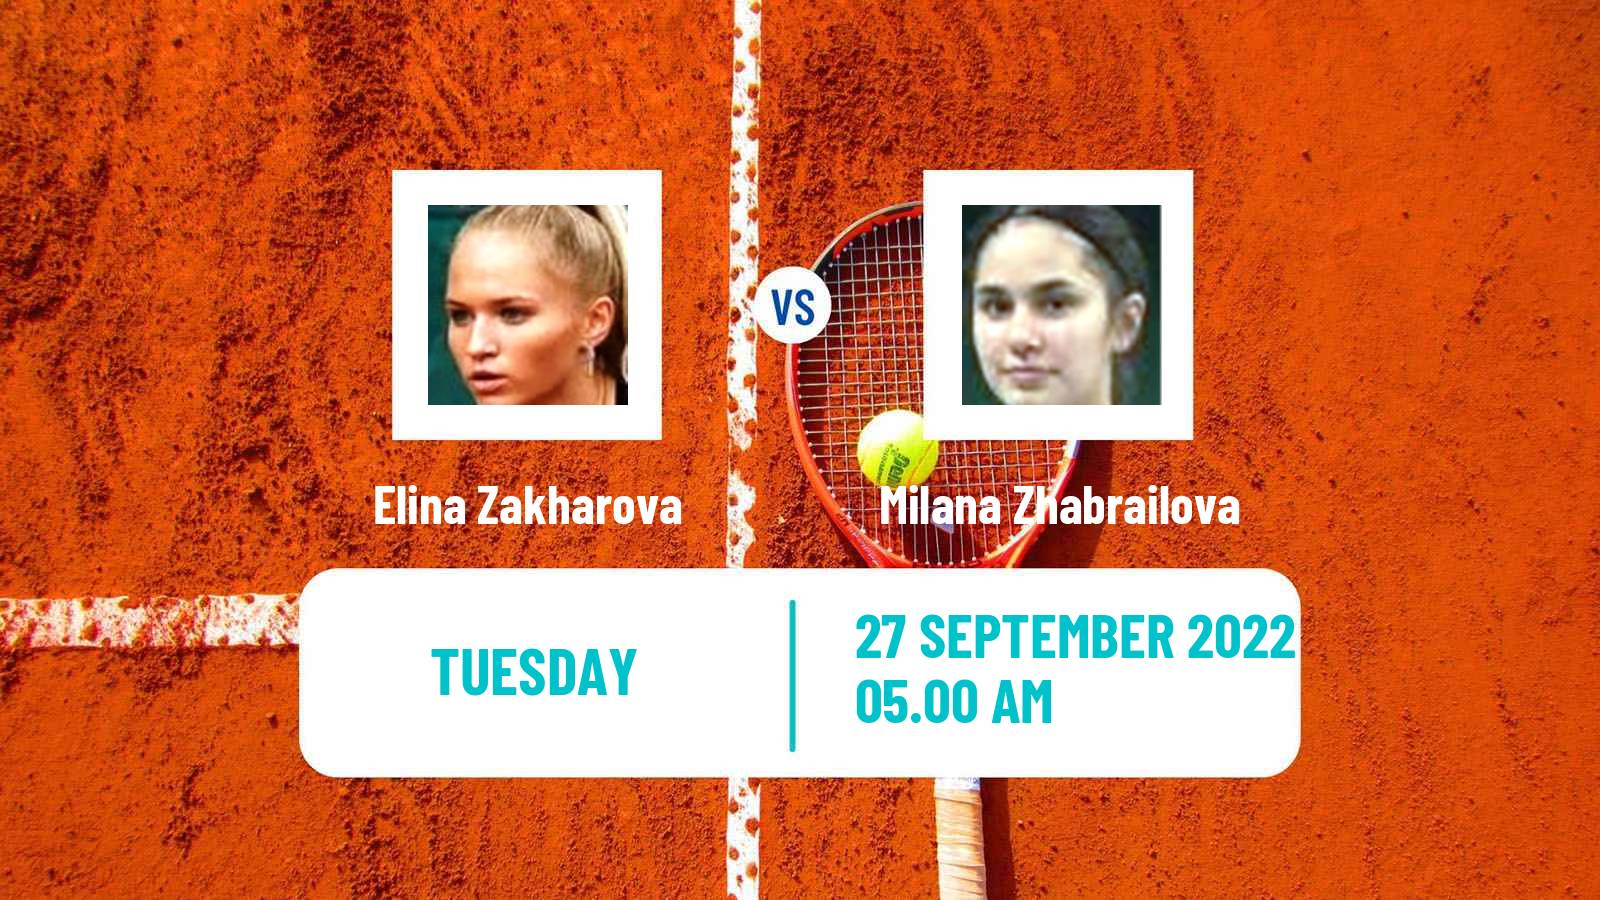 Tennis ITF Tournaments Elina Zakharova - Milana Zhabrailova